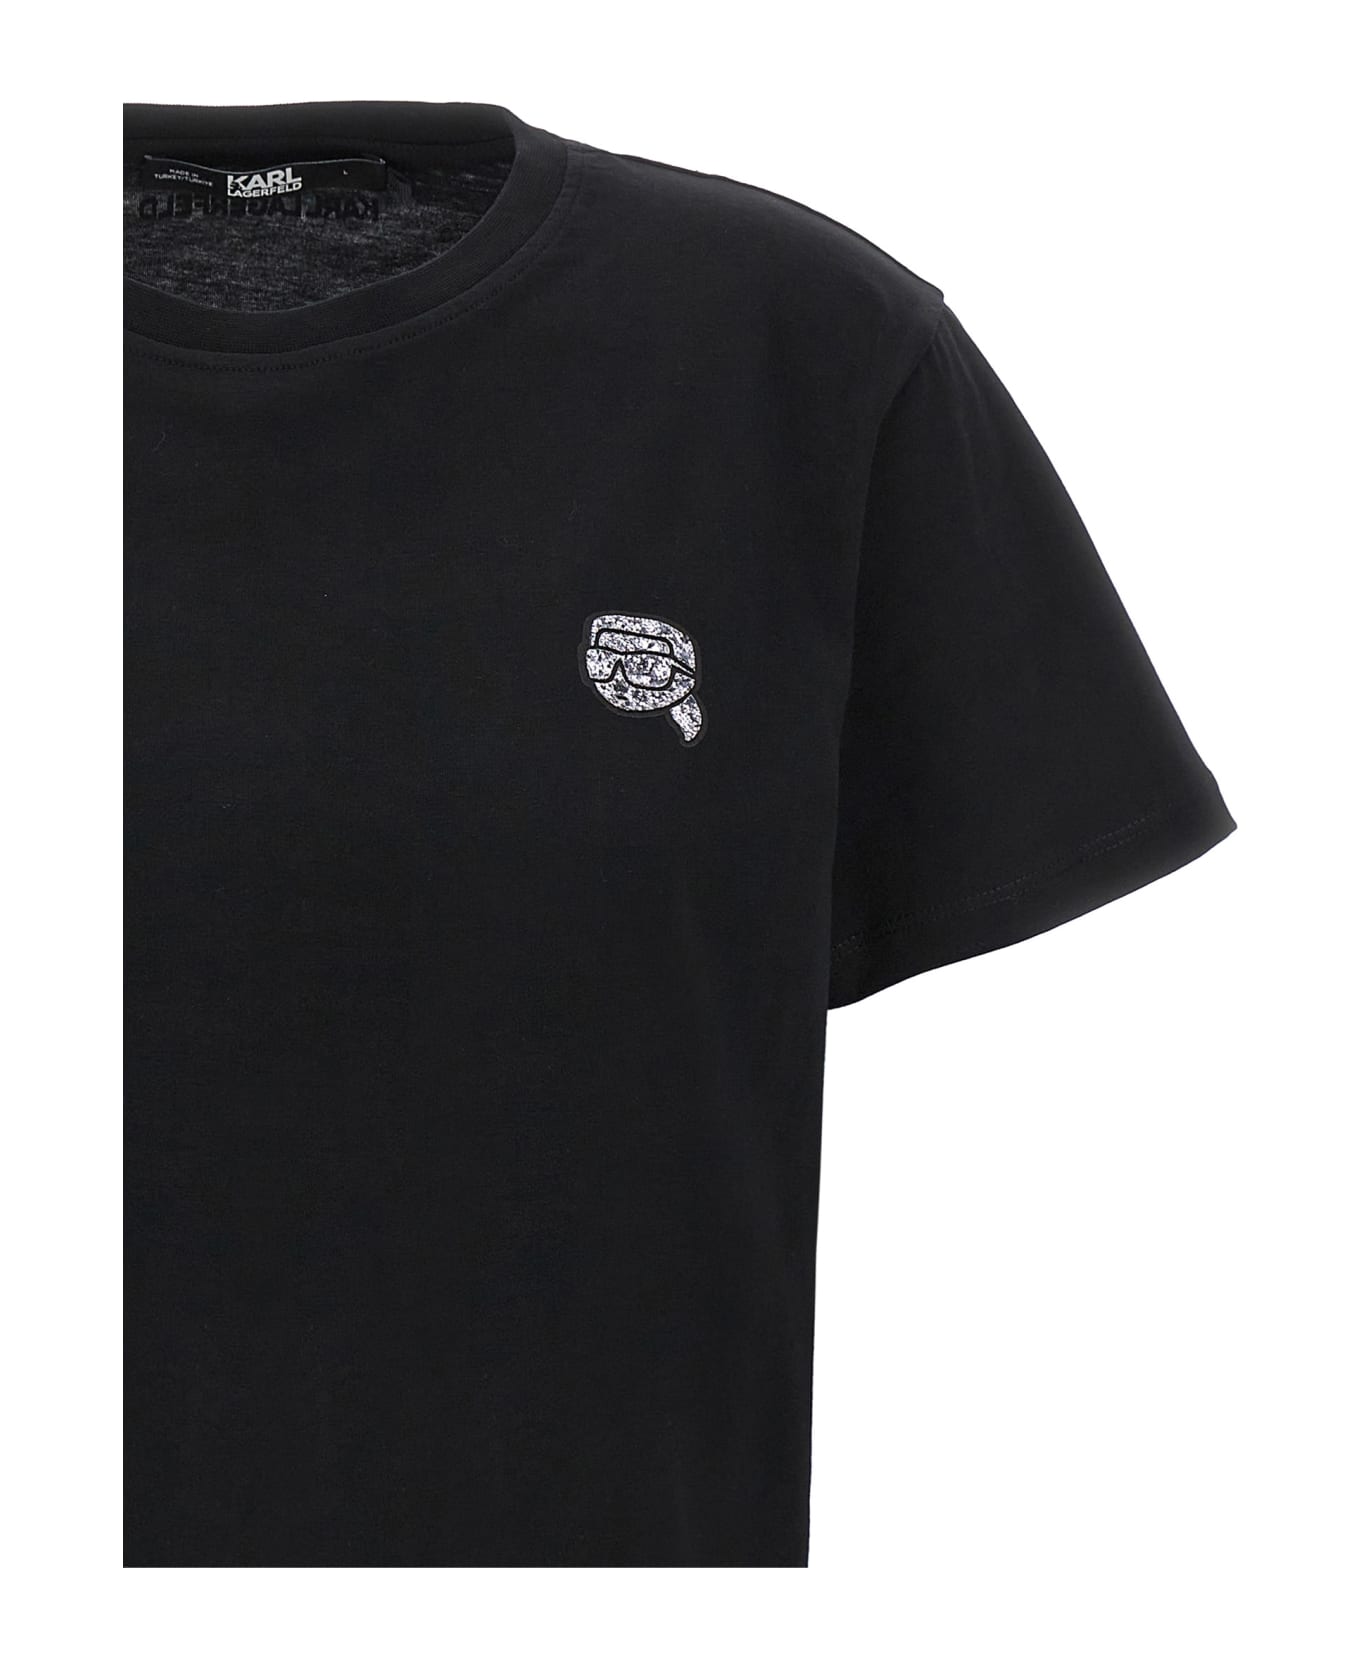 Karl Lagerfeld 'ikonik 2,0 Glitter' T-shirt - Black  